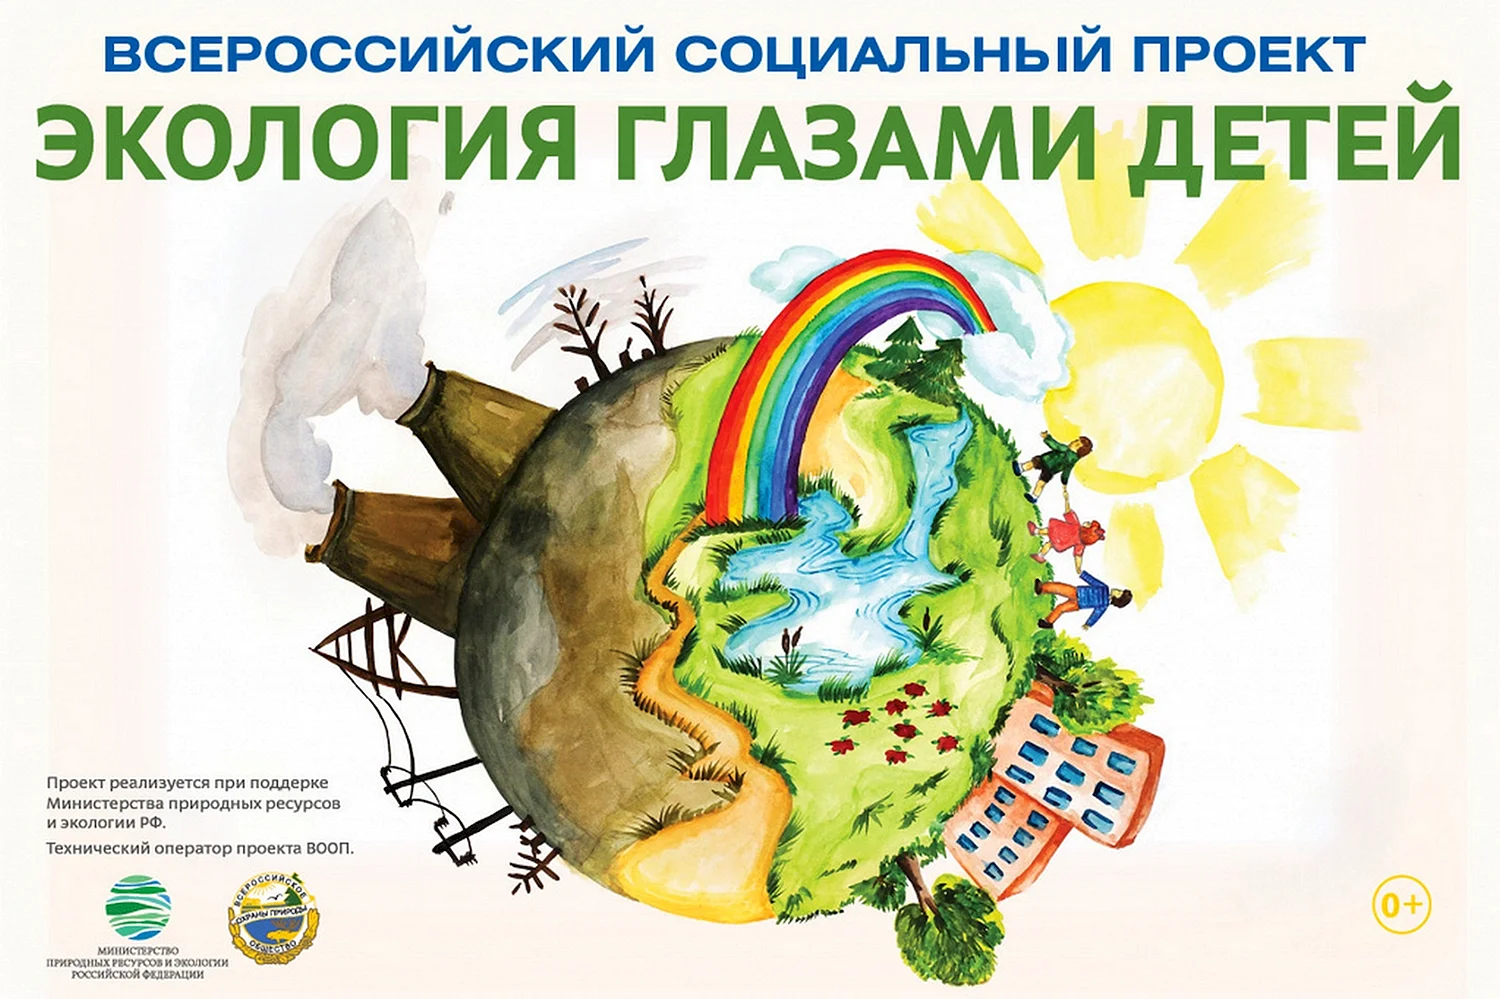 Экология глазами детей конкурс рисунков 2020